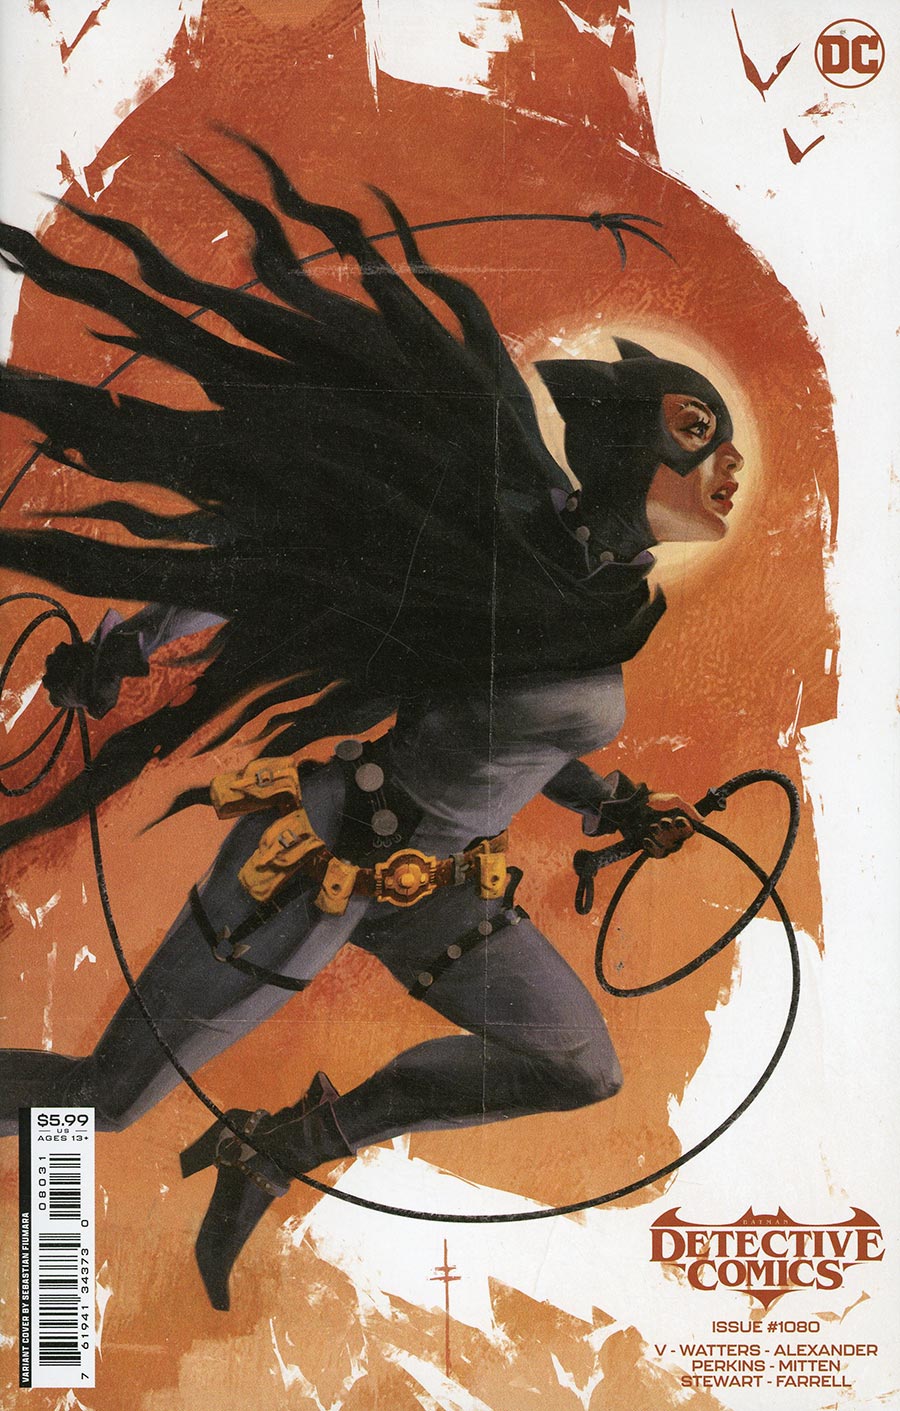 Detective Comics Vol 2 #1080 Cover C Variant Sebastian Fiumara Card Stock Cover